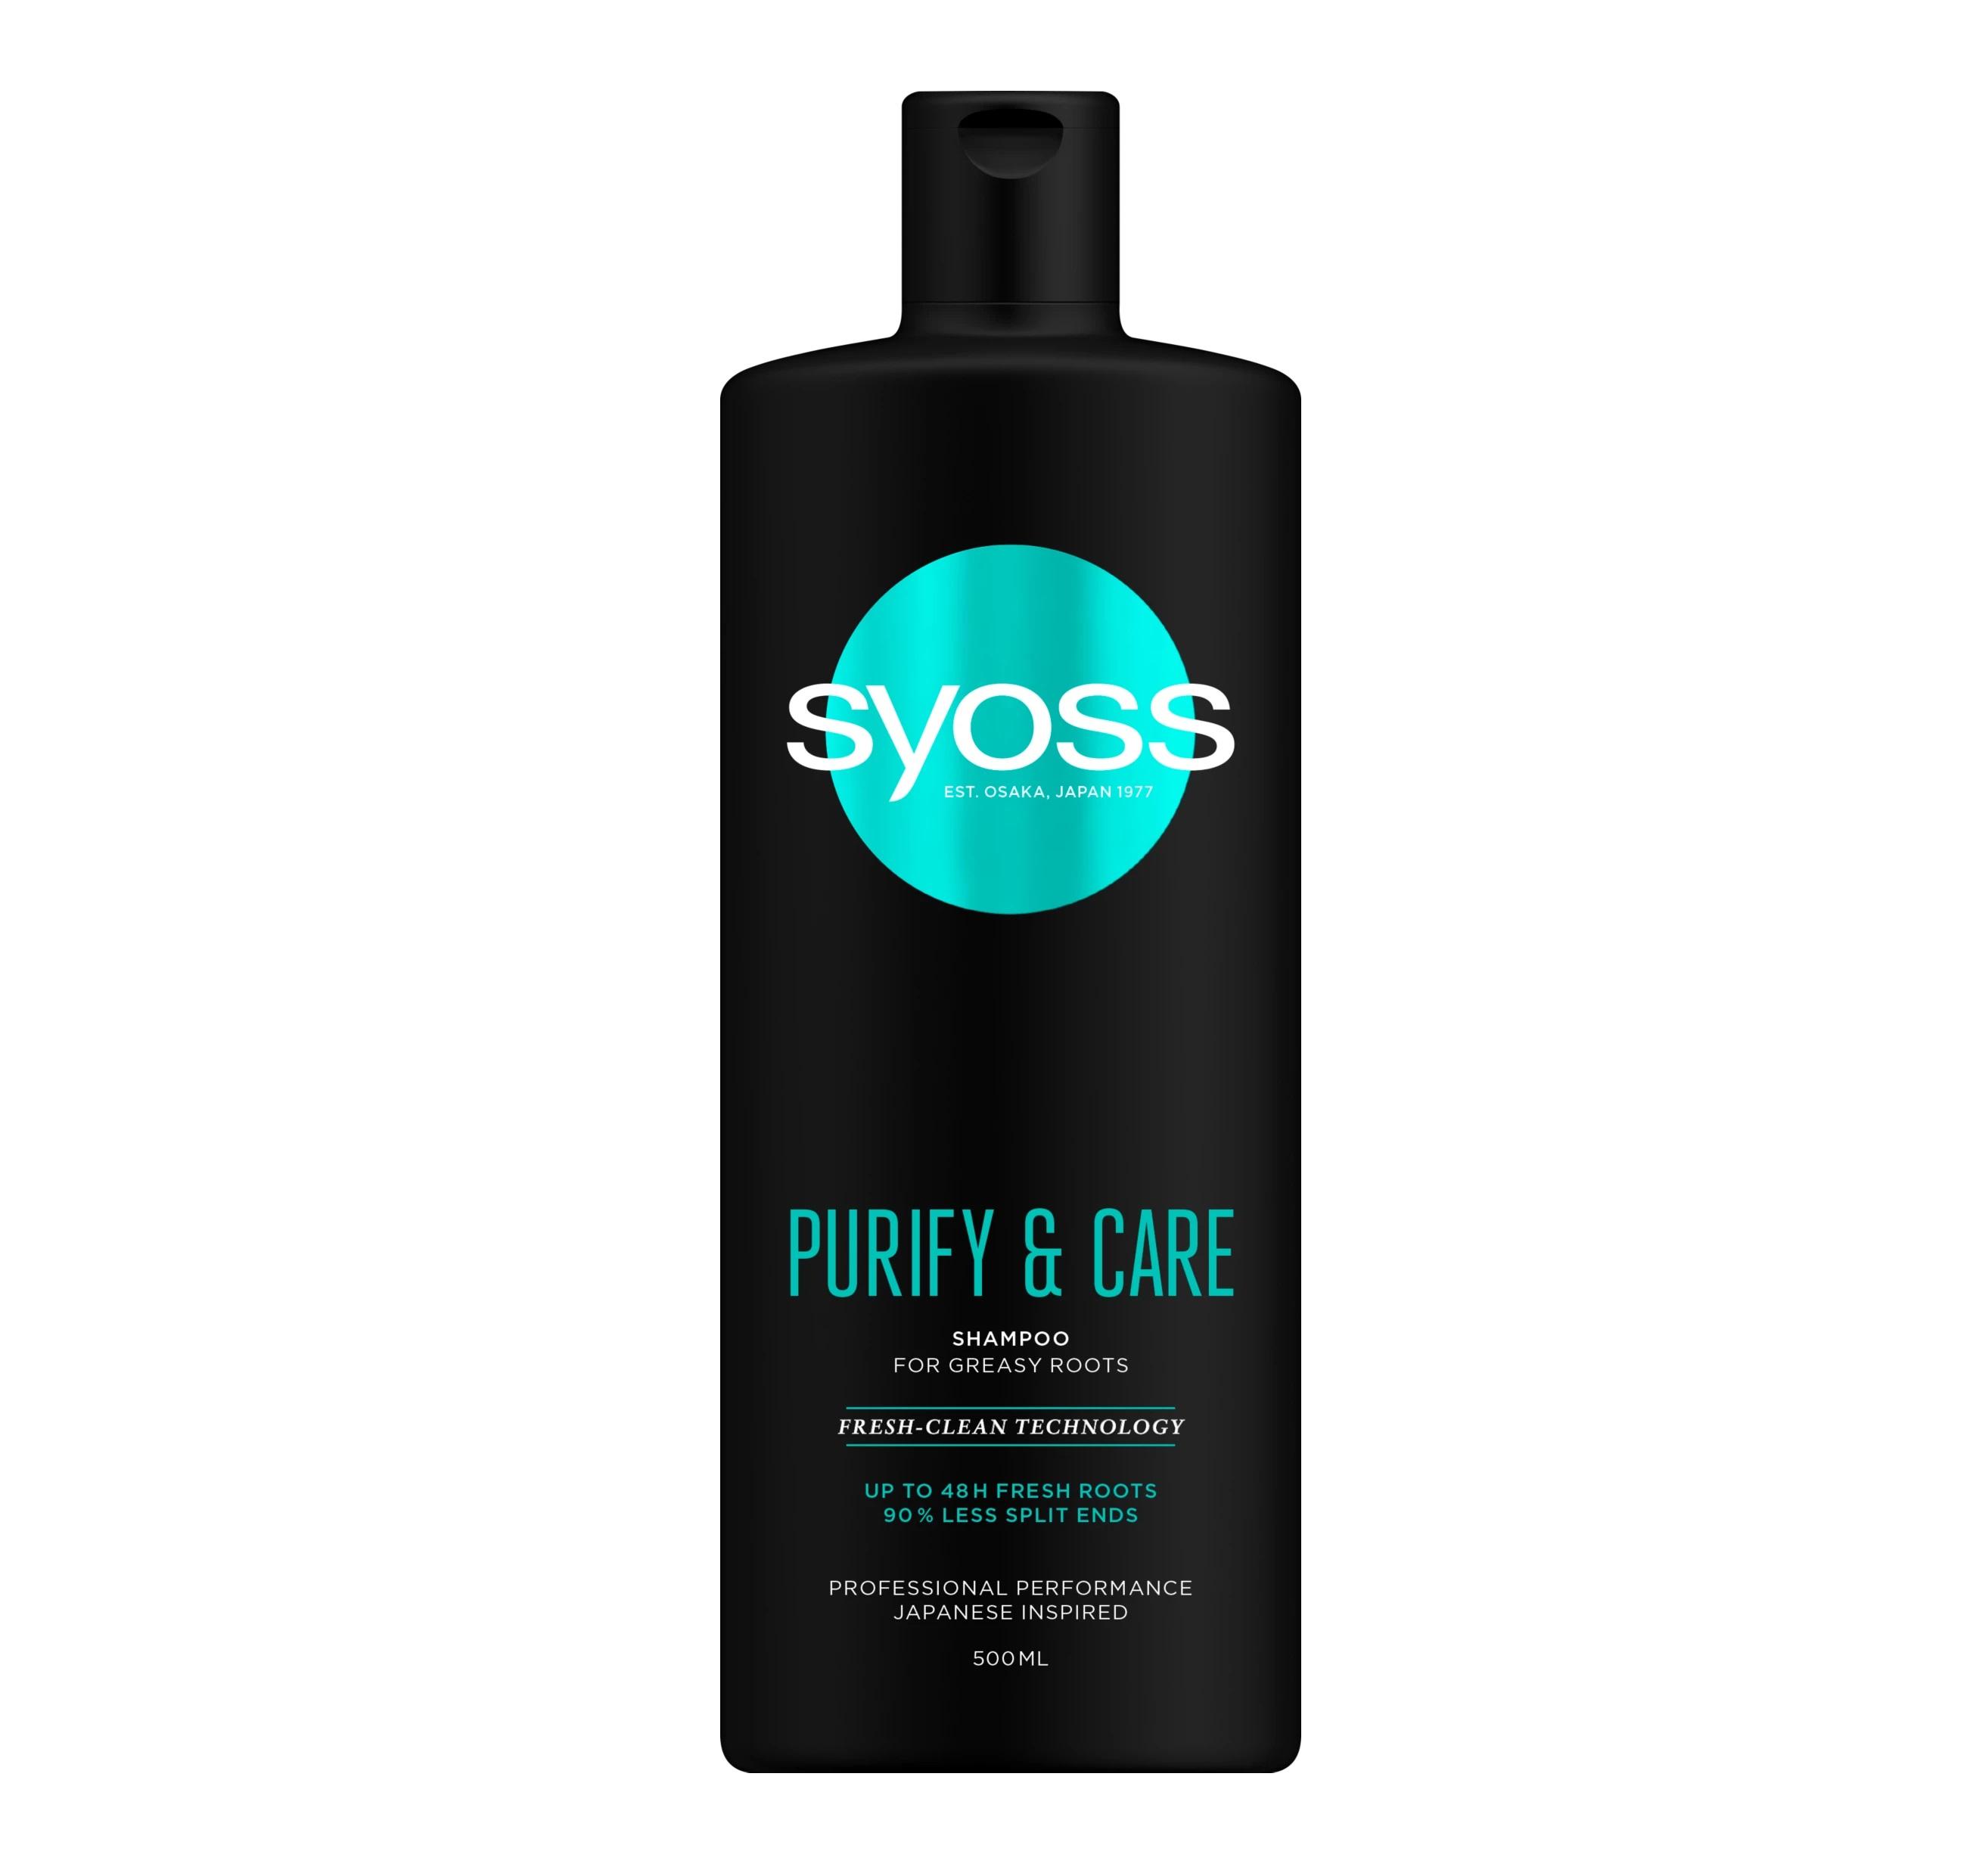 Purify & Care Shampoo